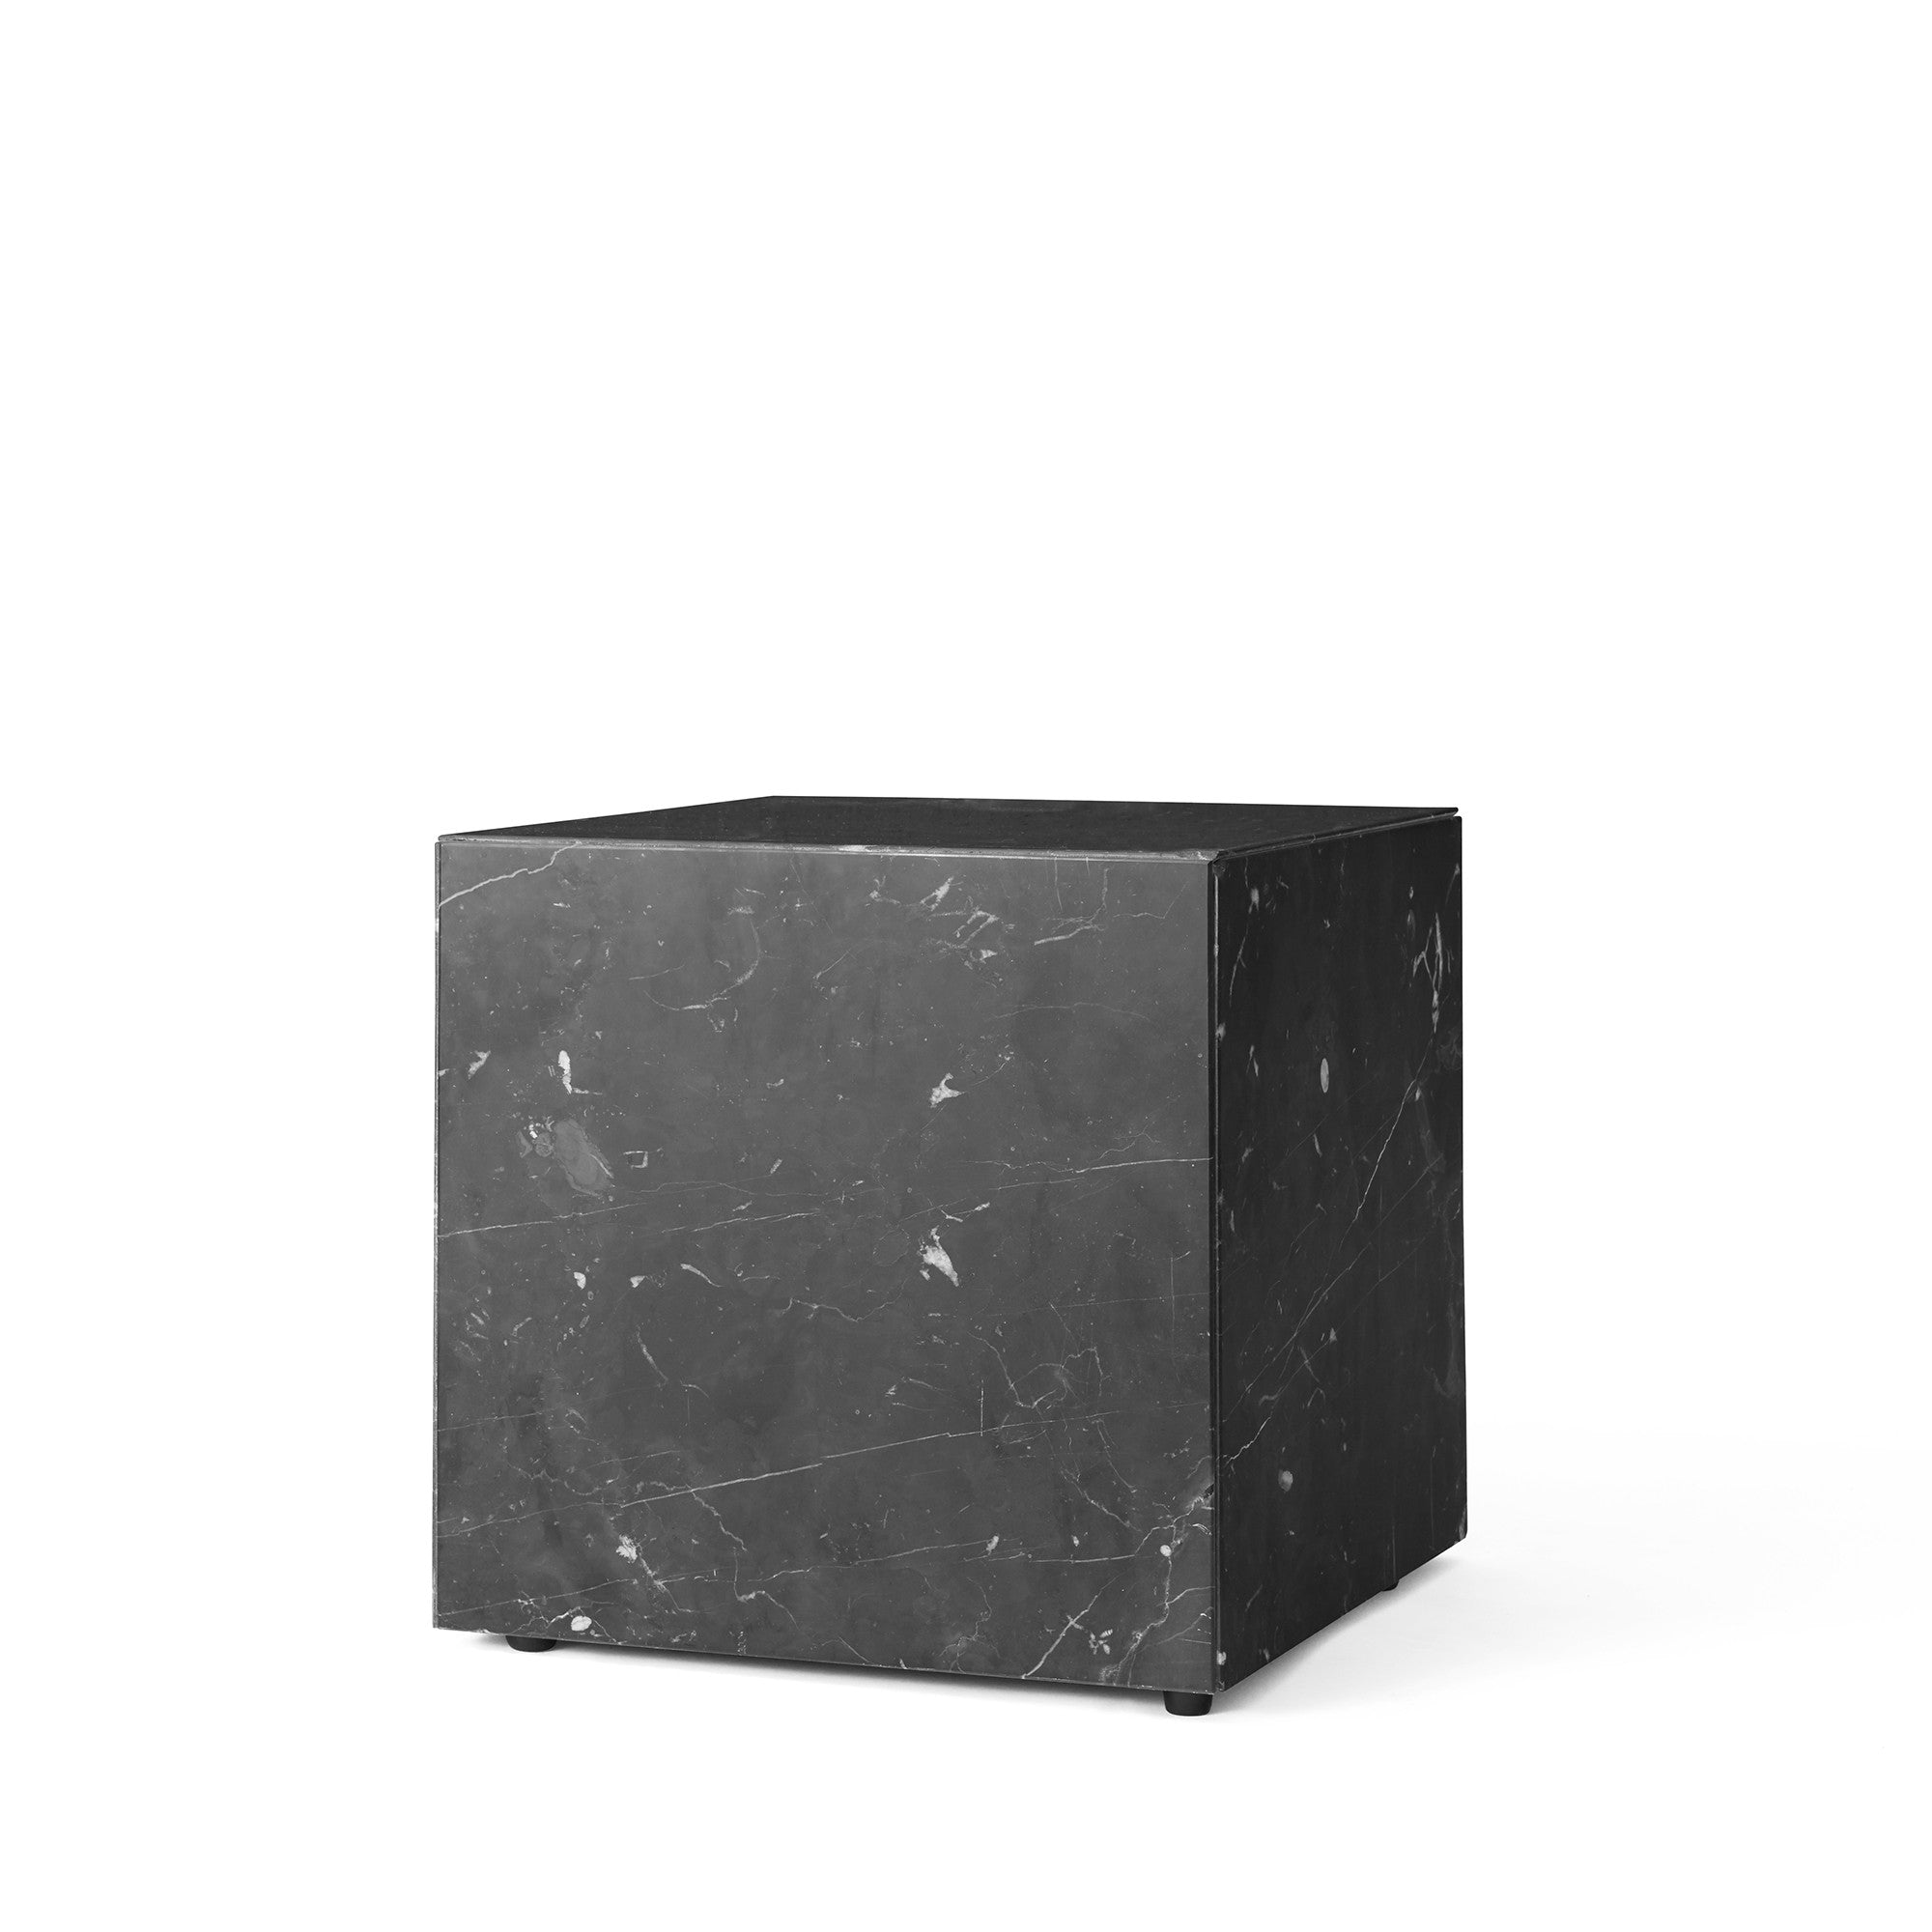 Plinth măsuță cub